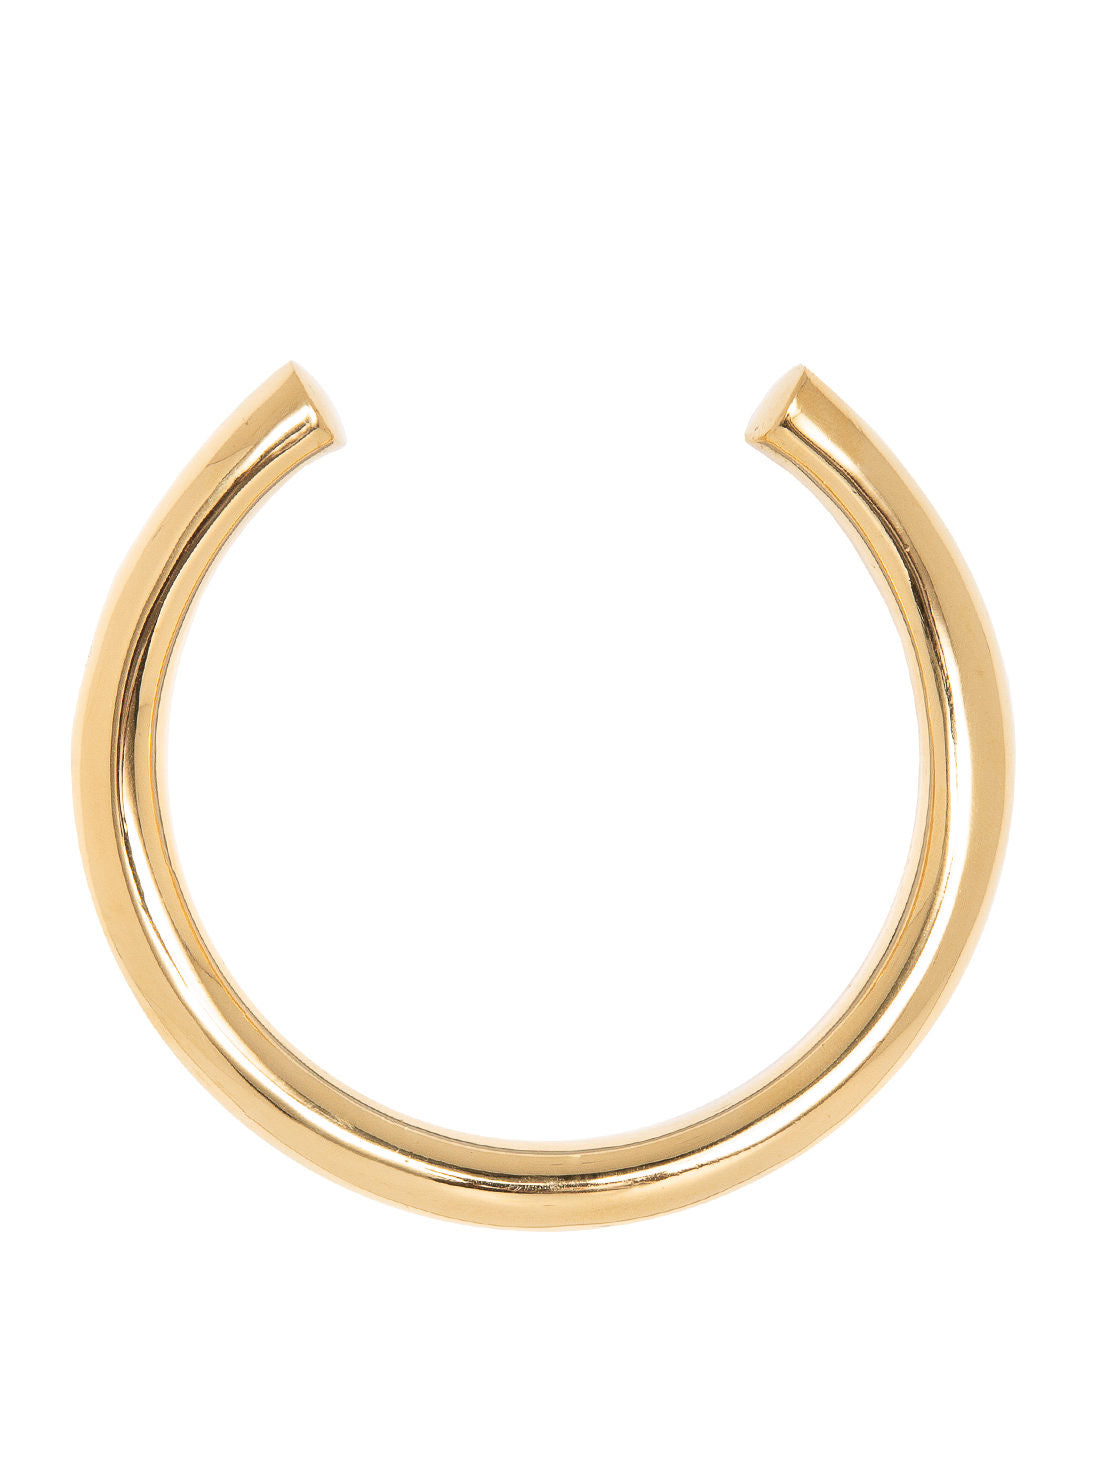 Gold horseshoe bangle